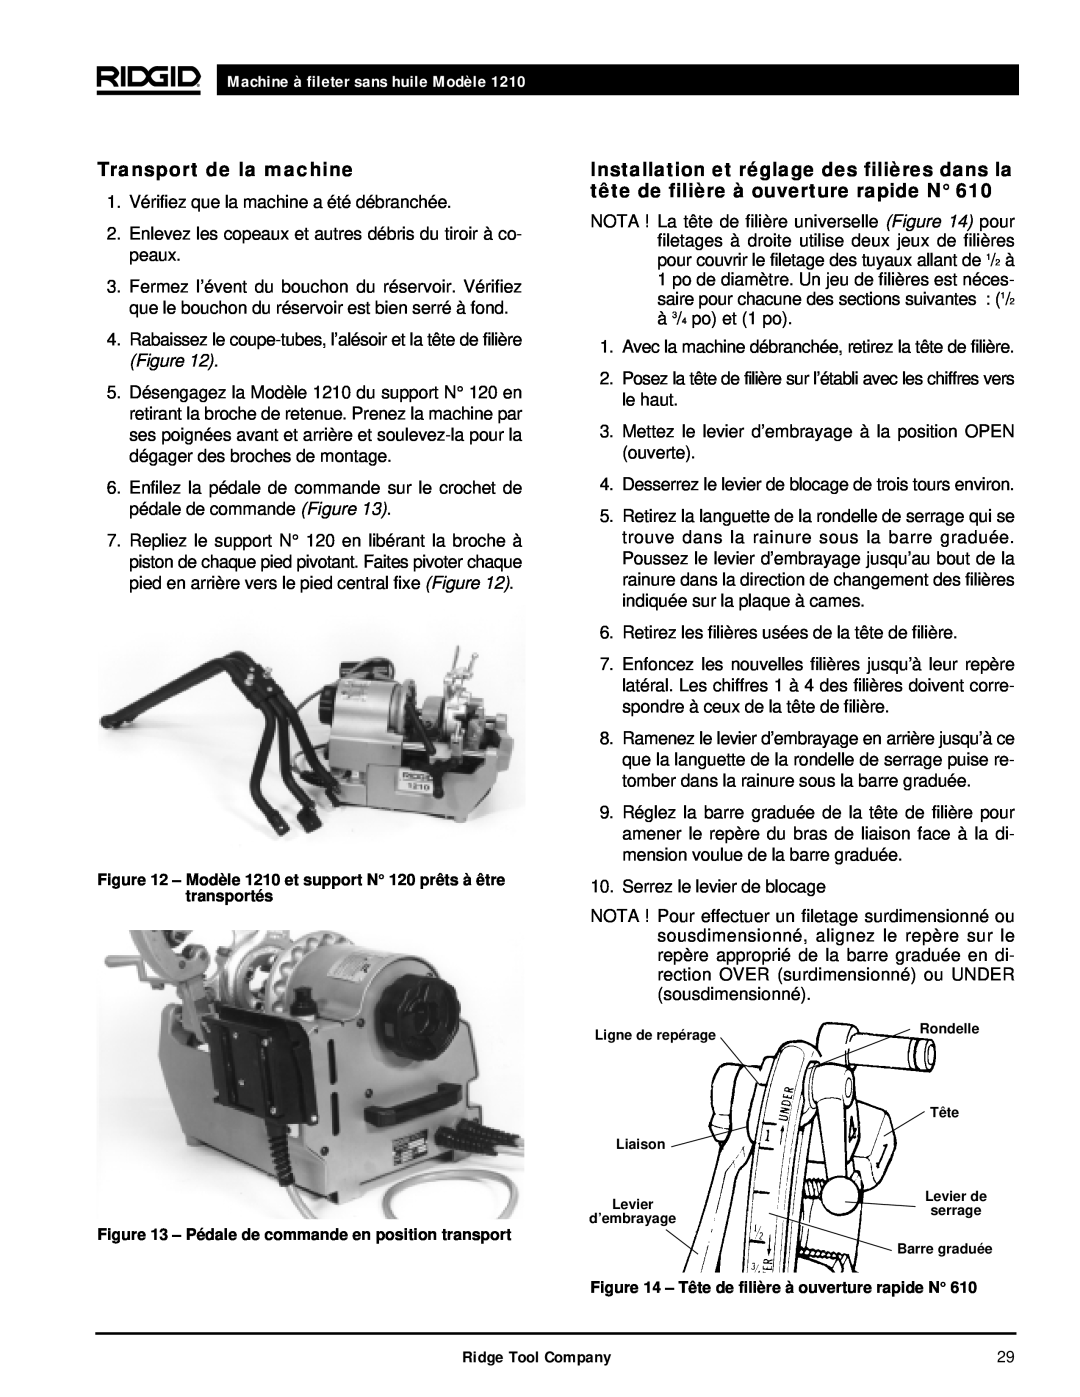 RIDGID 1210 manual Transport de la machine, Machine à fileter sans huile Modèle 